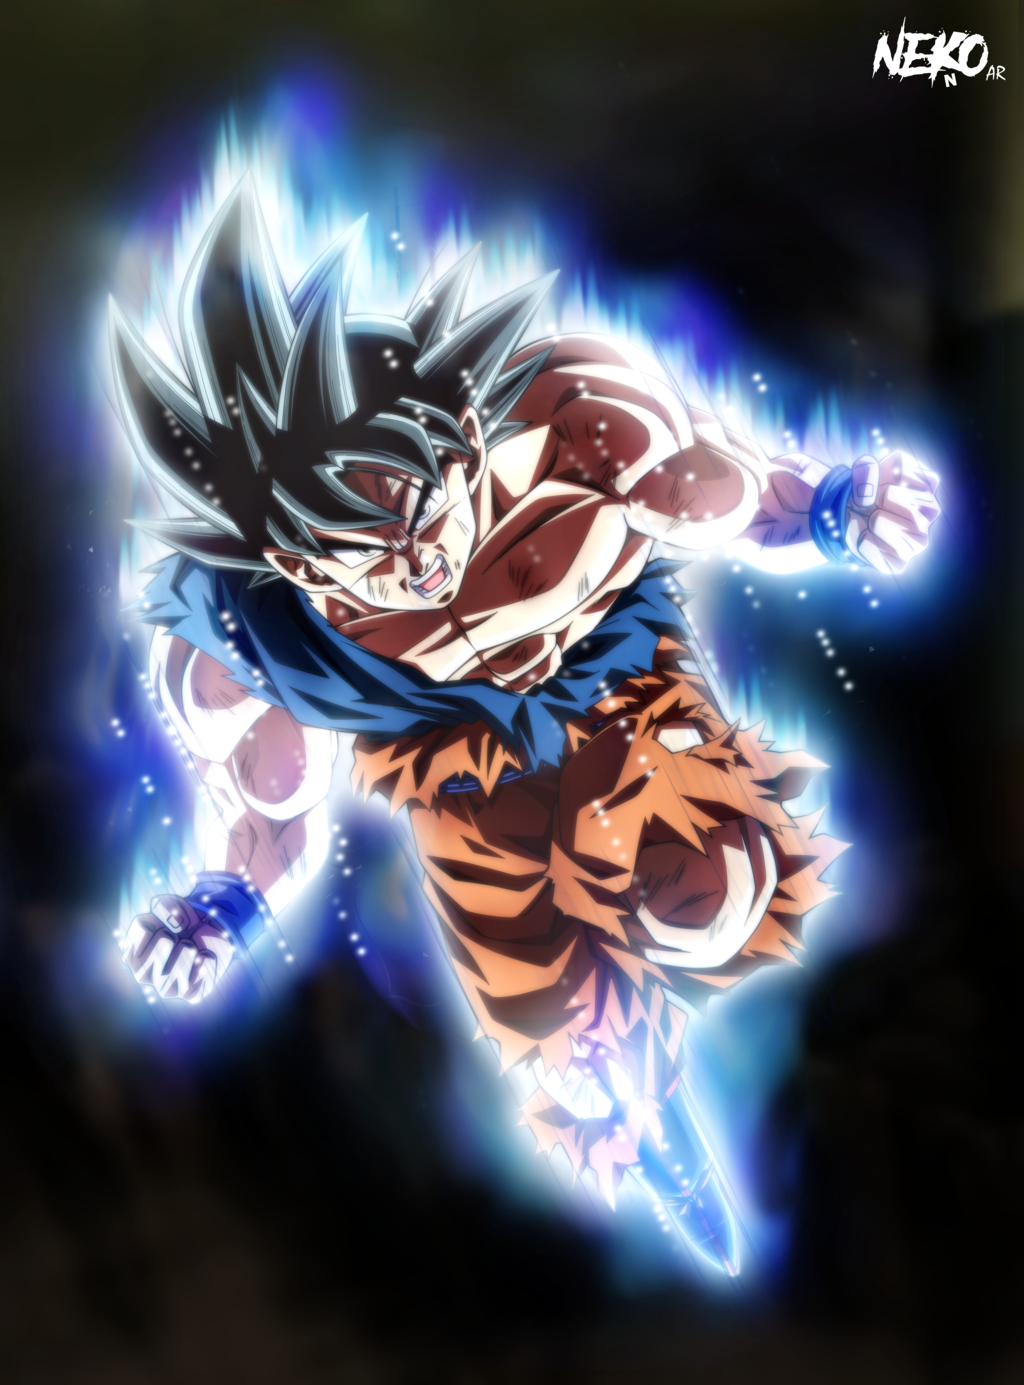 Ultra Instinct Goku wtf by NekoAR on DeviantArt